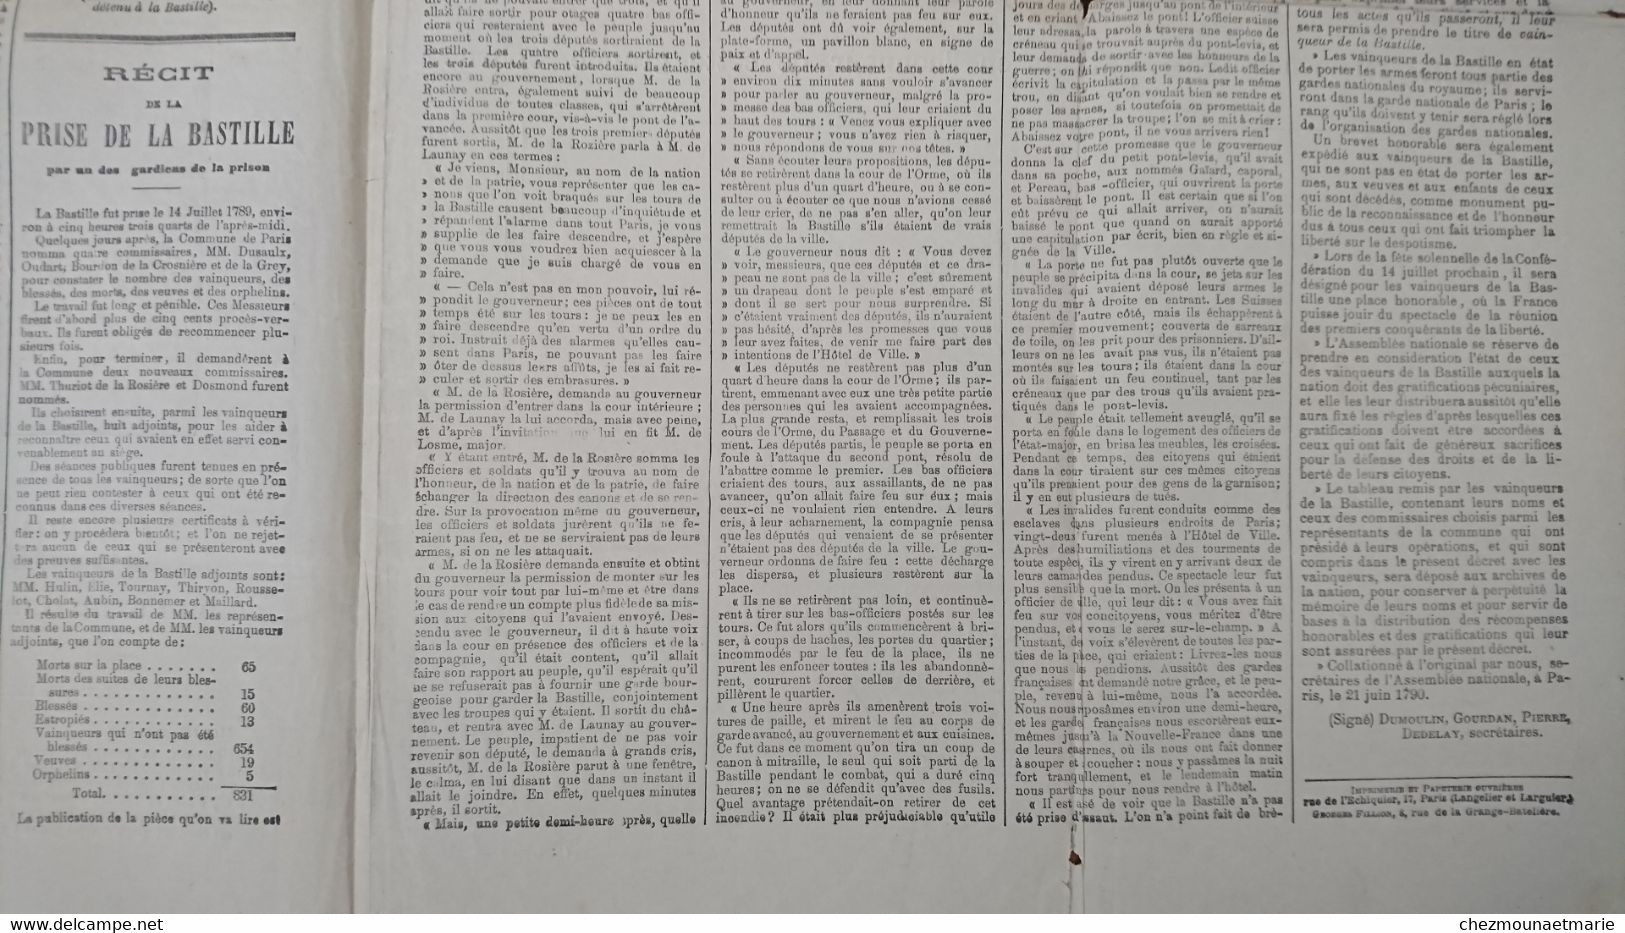 LE PETIT NORD JOURNAL POLITIQUE - SUPPLEMENT SUR LE 12 ET 14 JUILLET 1789 - Unclassified